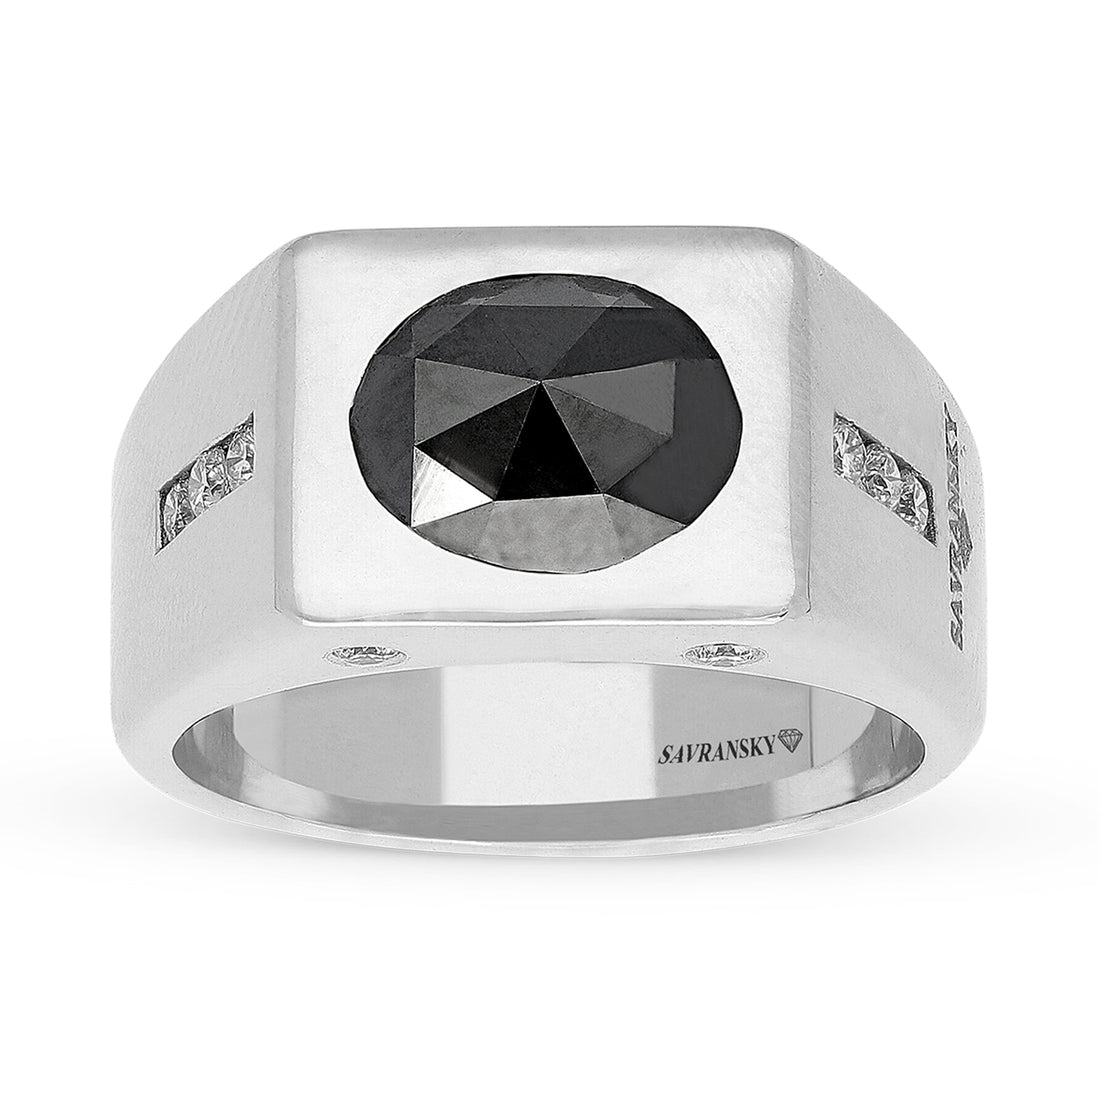 Oval Cut Black Diamond Signet Ring - 2.5 Carat